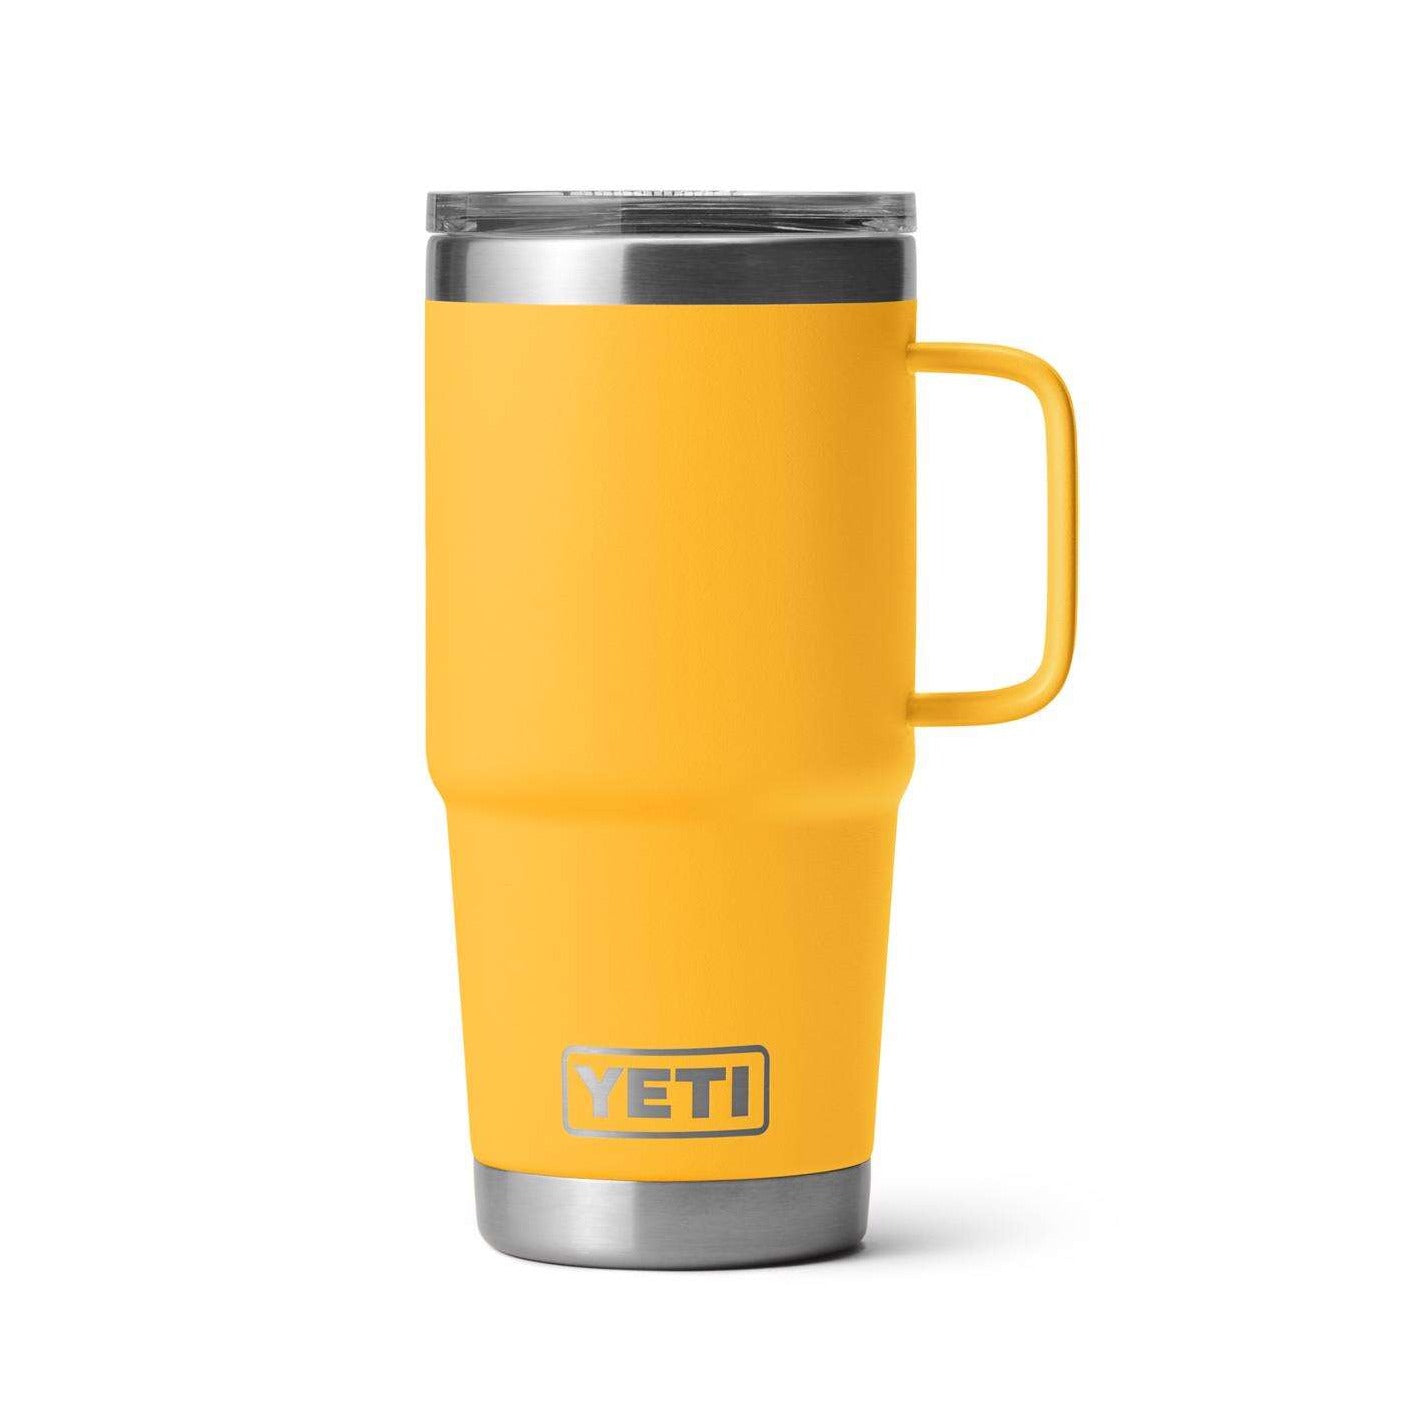 Yeti - Rambler 20 oz Travel Mug - Alpine Yellow